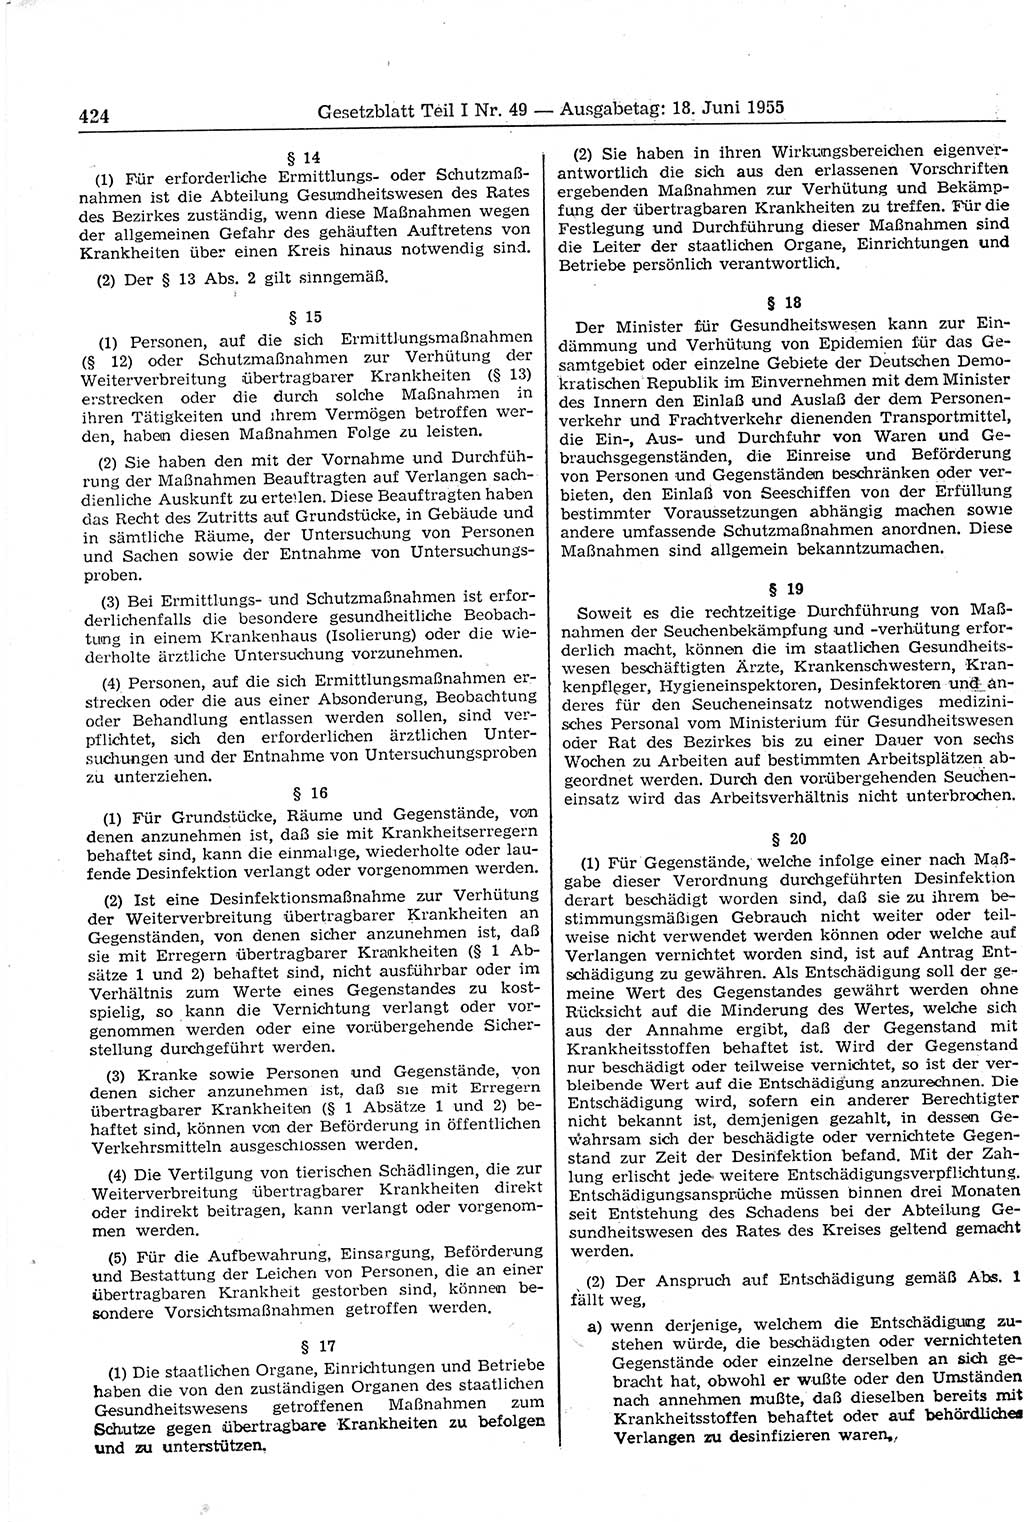 Gesetzblatt (GBl.) der Deutschen Demokratischen Republik (DDR) Teil Ⅰ 1955, Seite 424 (GBl. DDR Ⅰ 1955, S. 424)